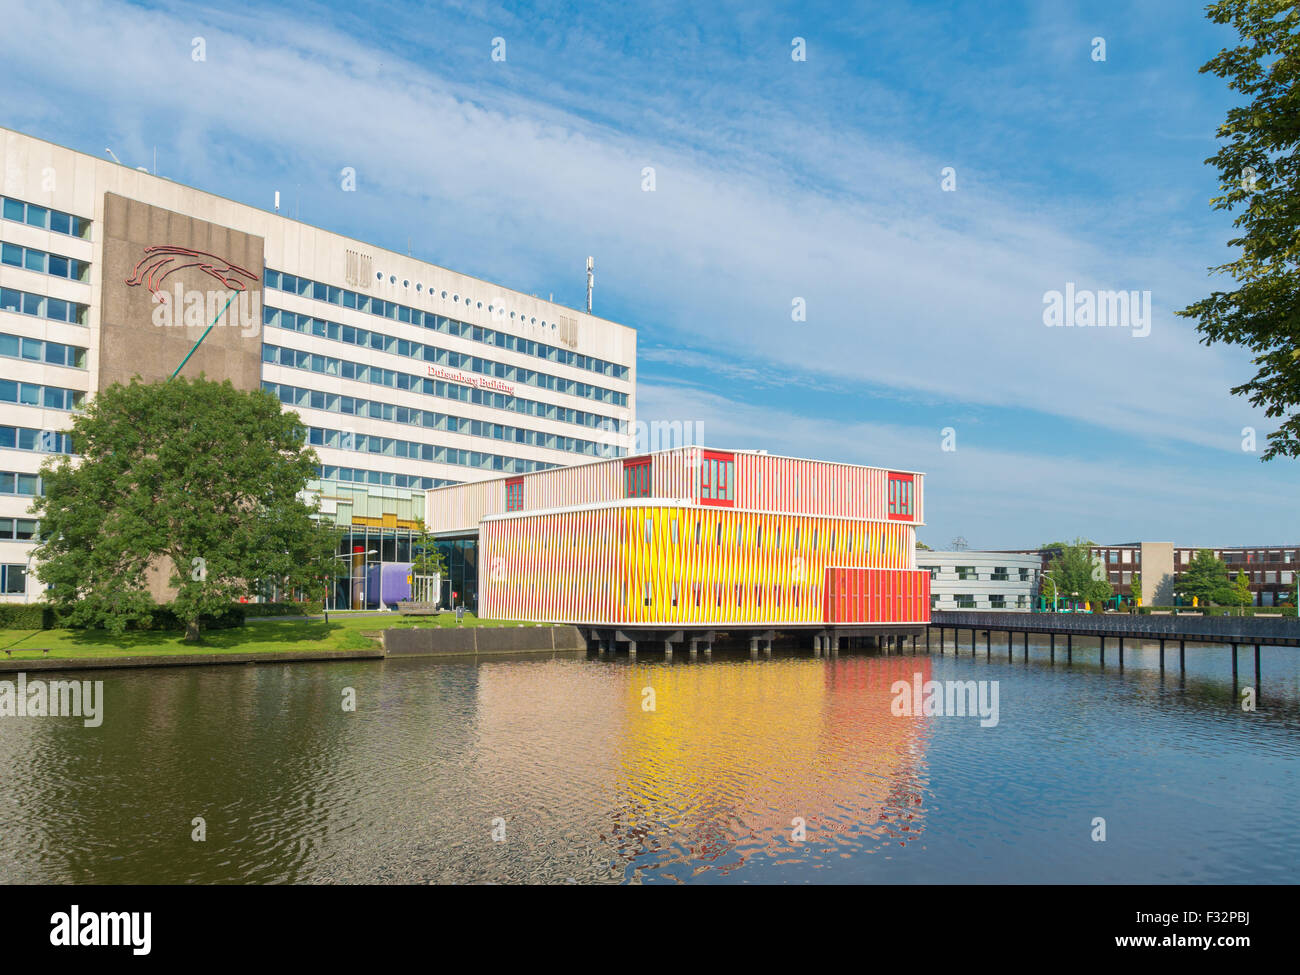 GRONINGEN, Pays-Bas - le 22 août 2015 : orange moderne s'appuyant sur le campus de l'université de Groningue. L'université compte aroun Banque D'Images